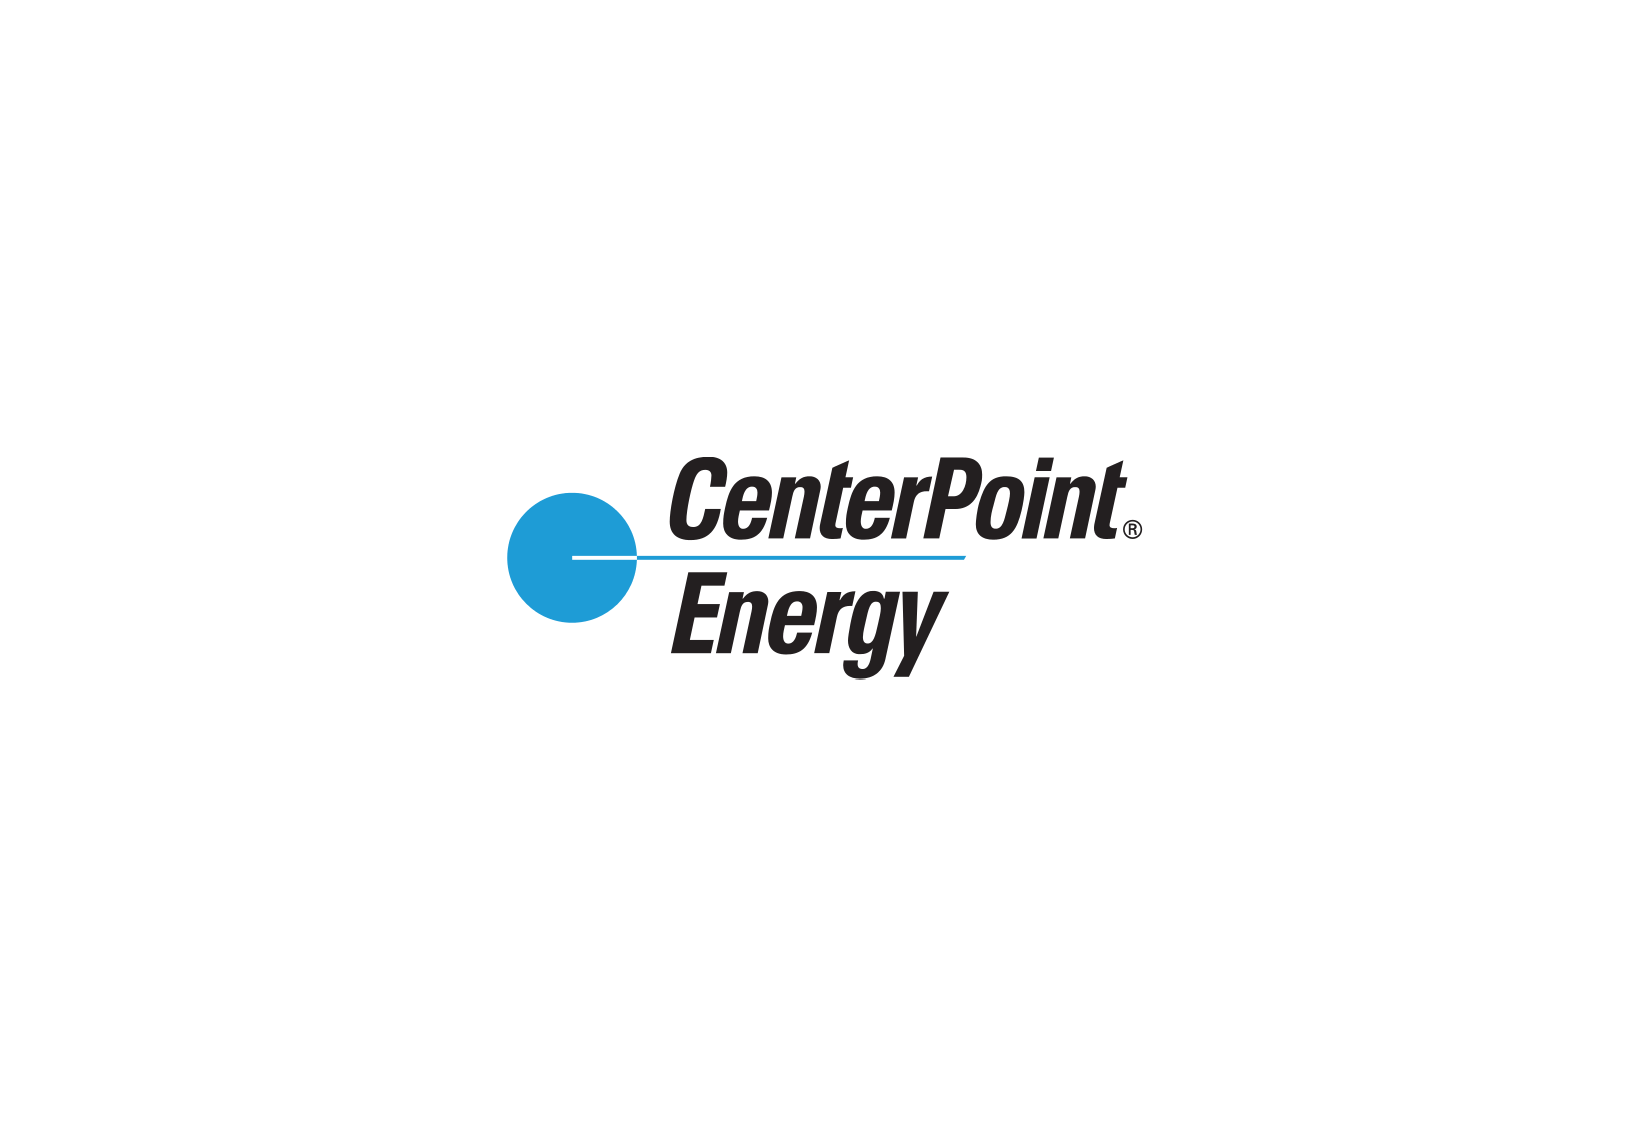 CenterPoint Energy Logo - CenterPoint Energy logo | Energy logo, NYSE